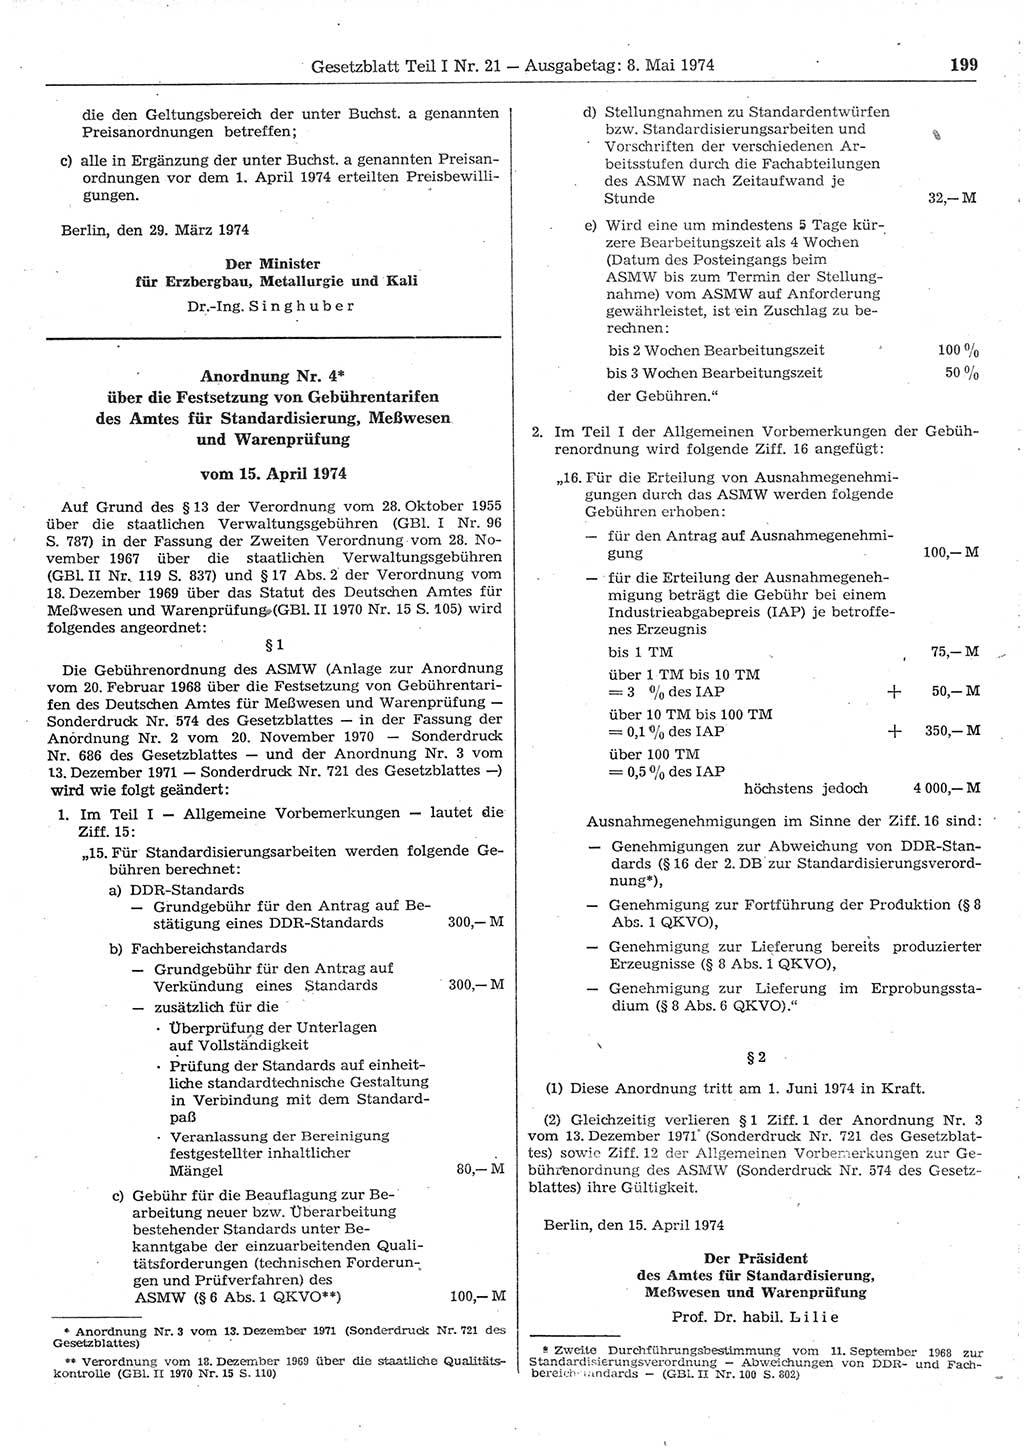 Gesetzblatt (GBl.) der Deutschen Demokratischen Republik (DDR) Teil Ⅰ 1974, Seite 199 (GBl. DDR Ⅰ 1974, S. 199)